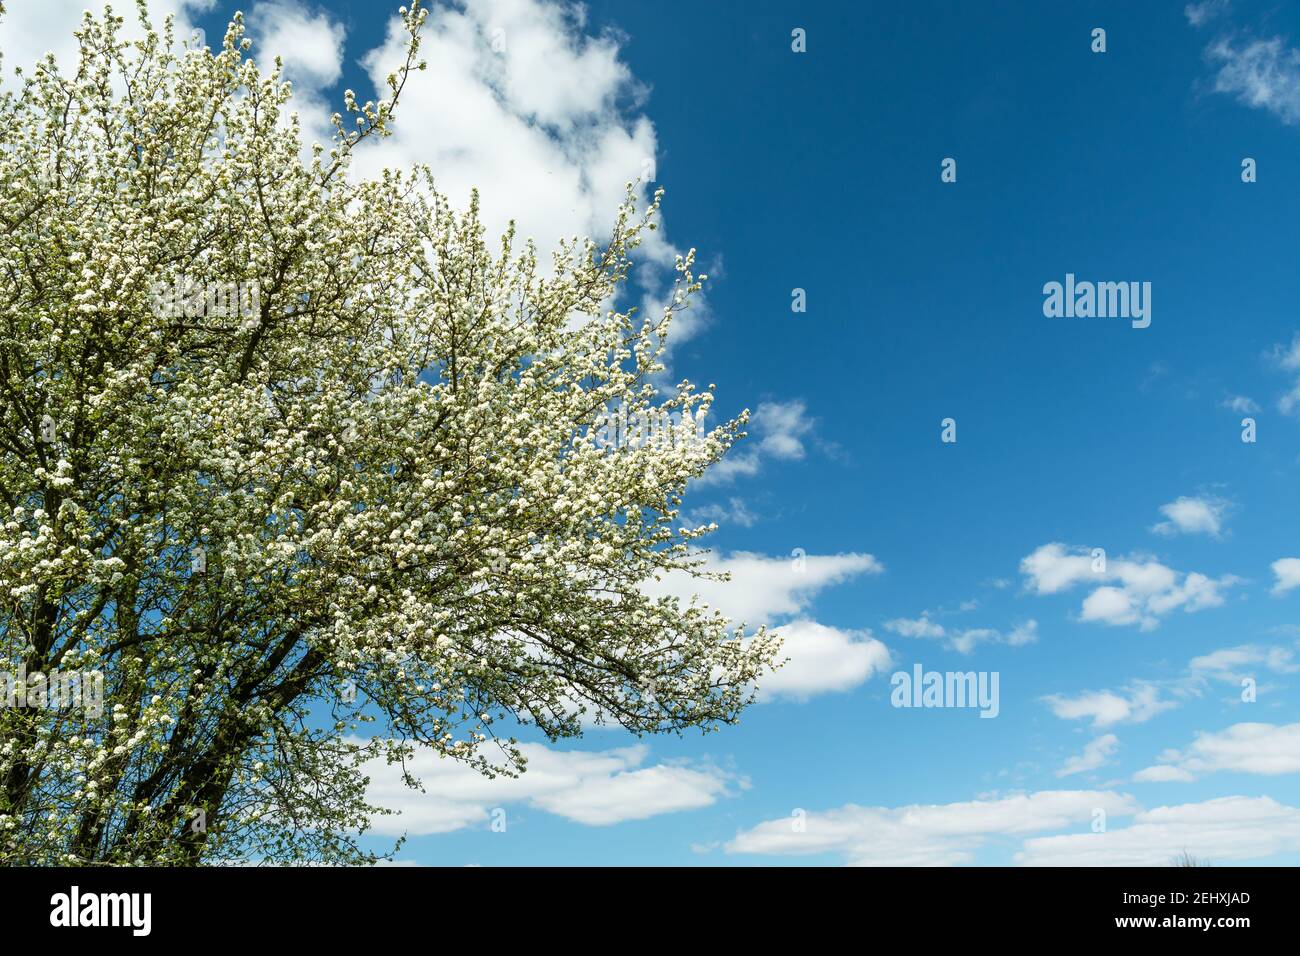 Zweige eines blühenden Baumes mit weißen Blumen und weißen Wolken gegen einen blauen Himmel, Blick auf den Frühling Stockfoto